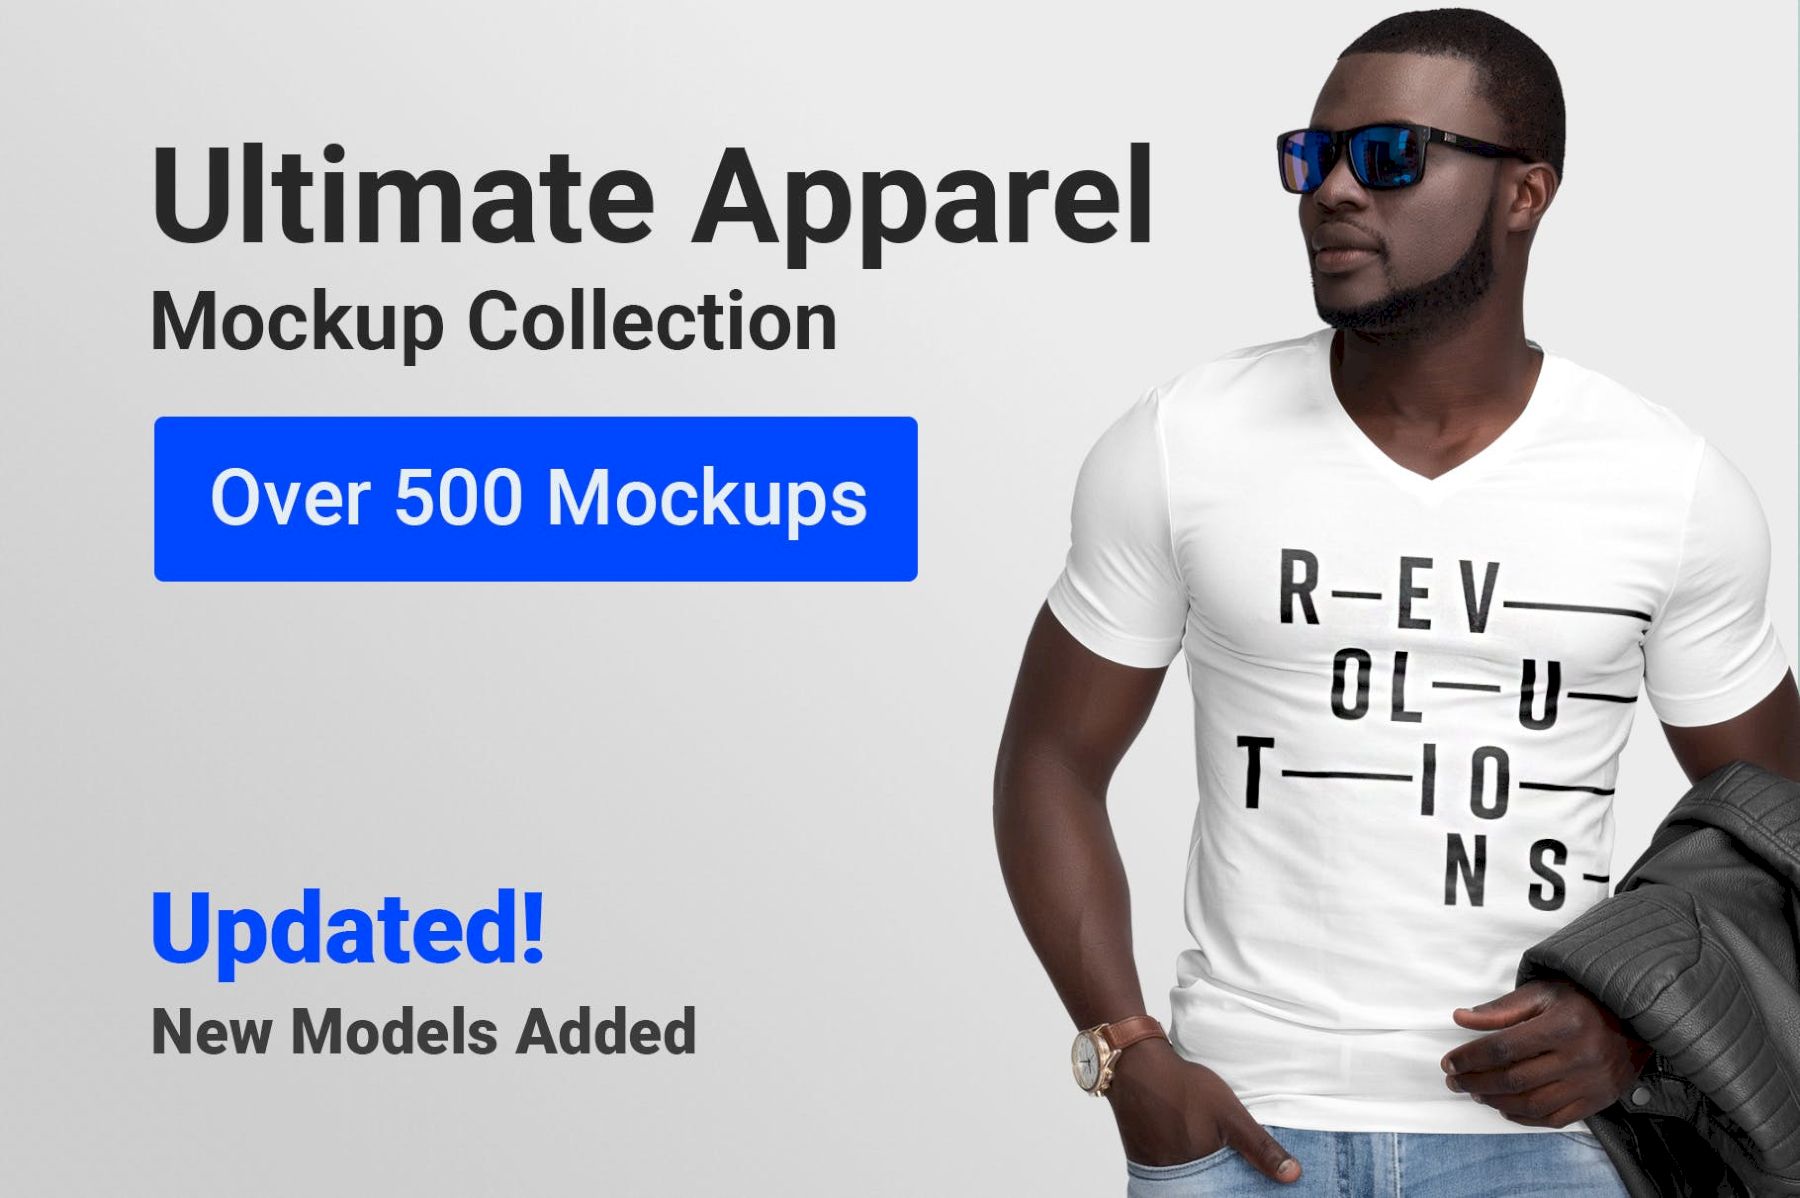 终极服装样机系列 Ultimate Apparel Mockup Collection